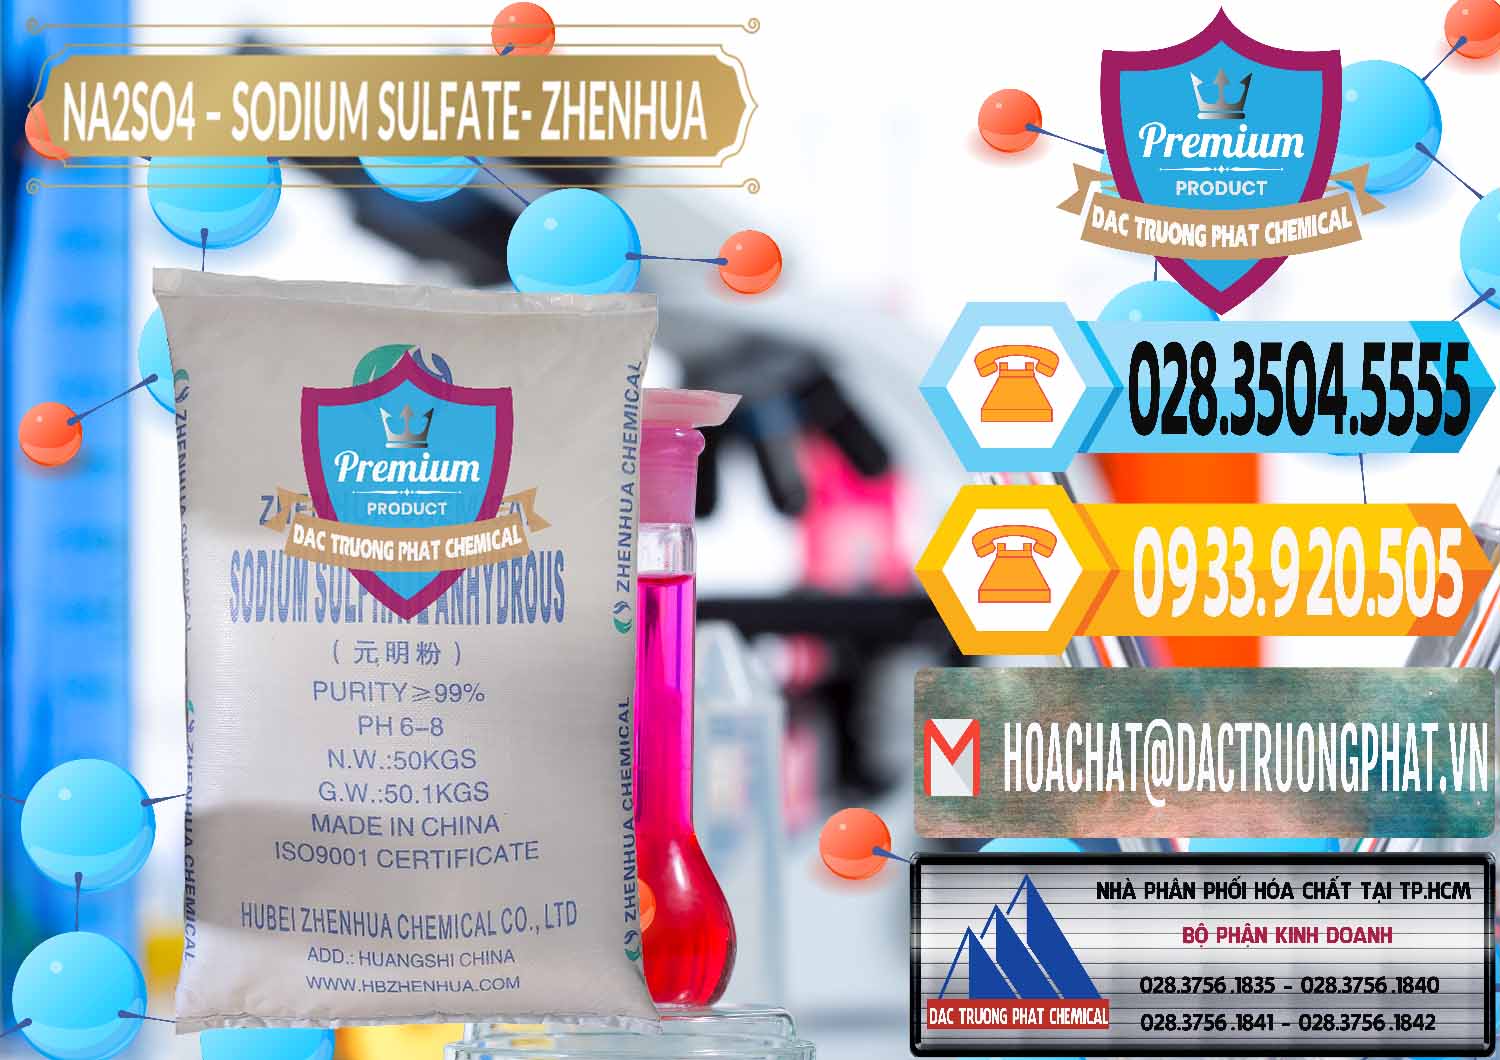 Cty nhập khẩu & bán Sodium Sulphate - Muối Sunfat Na2SO4 Zhenhua Trung Quốc China - 0101 - Đơn vị cung ứng và phân phối hóa chất tại TP.HCM - hoachattayrua.net